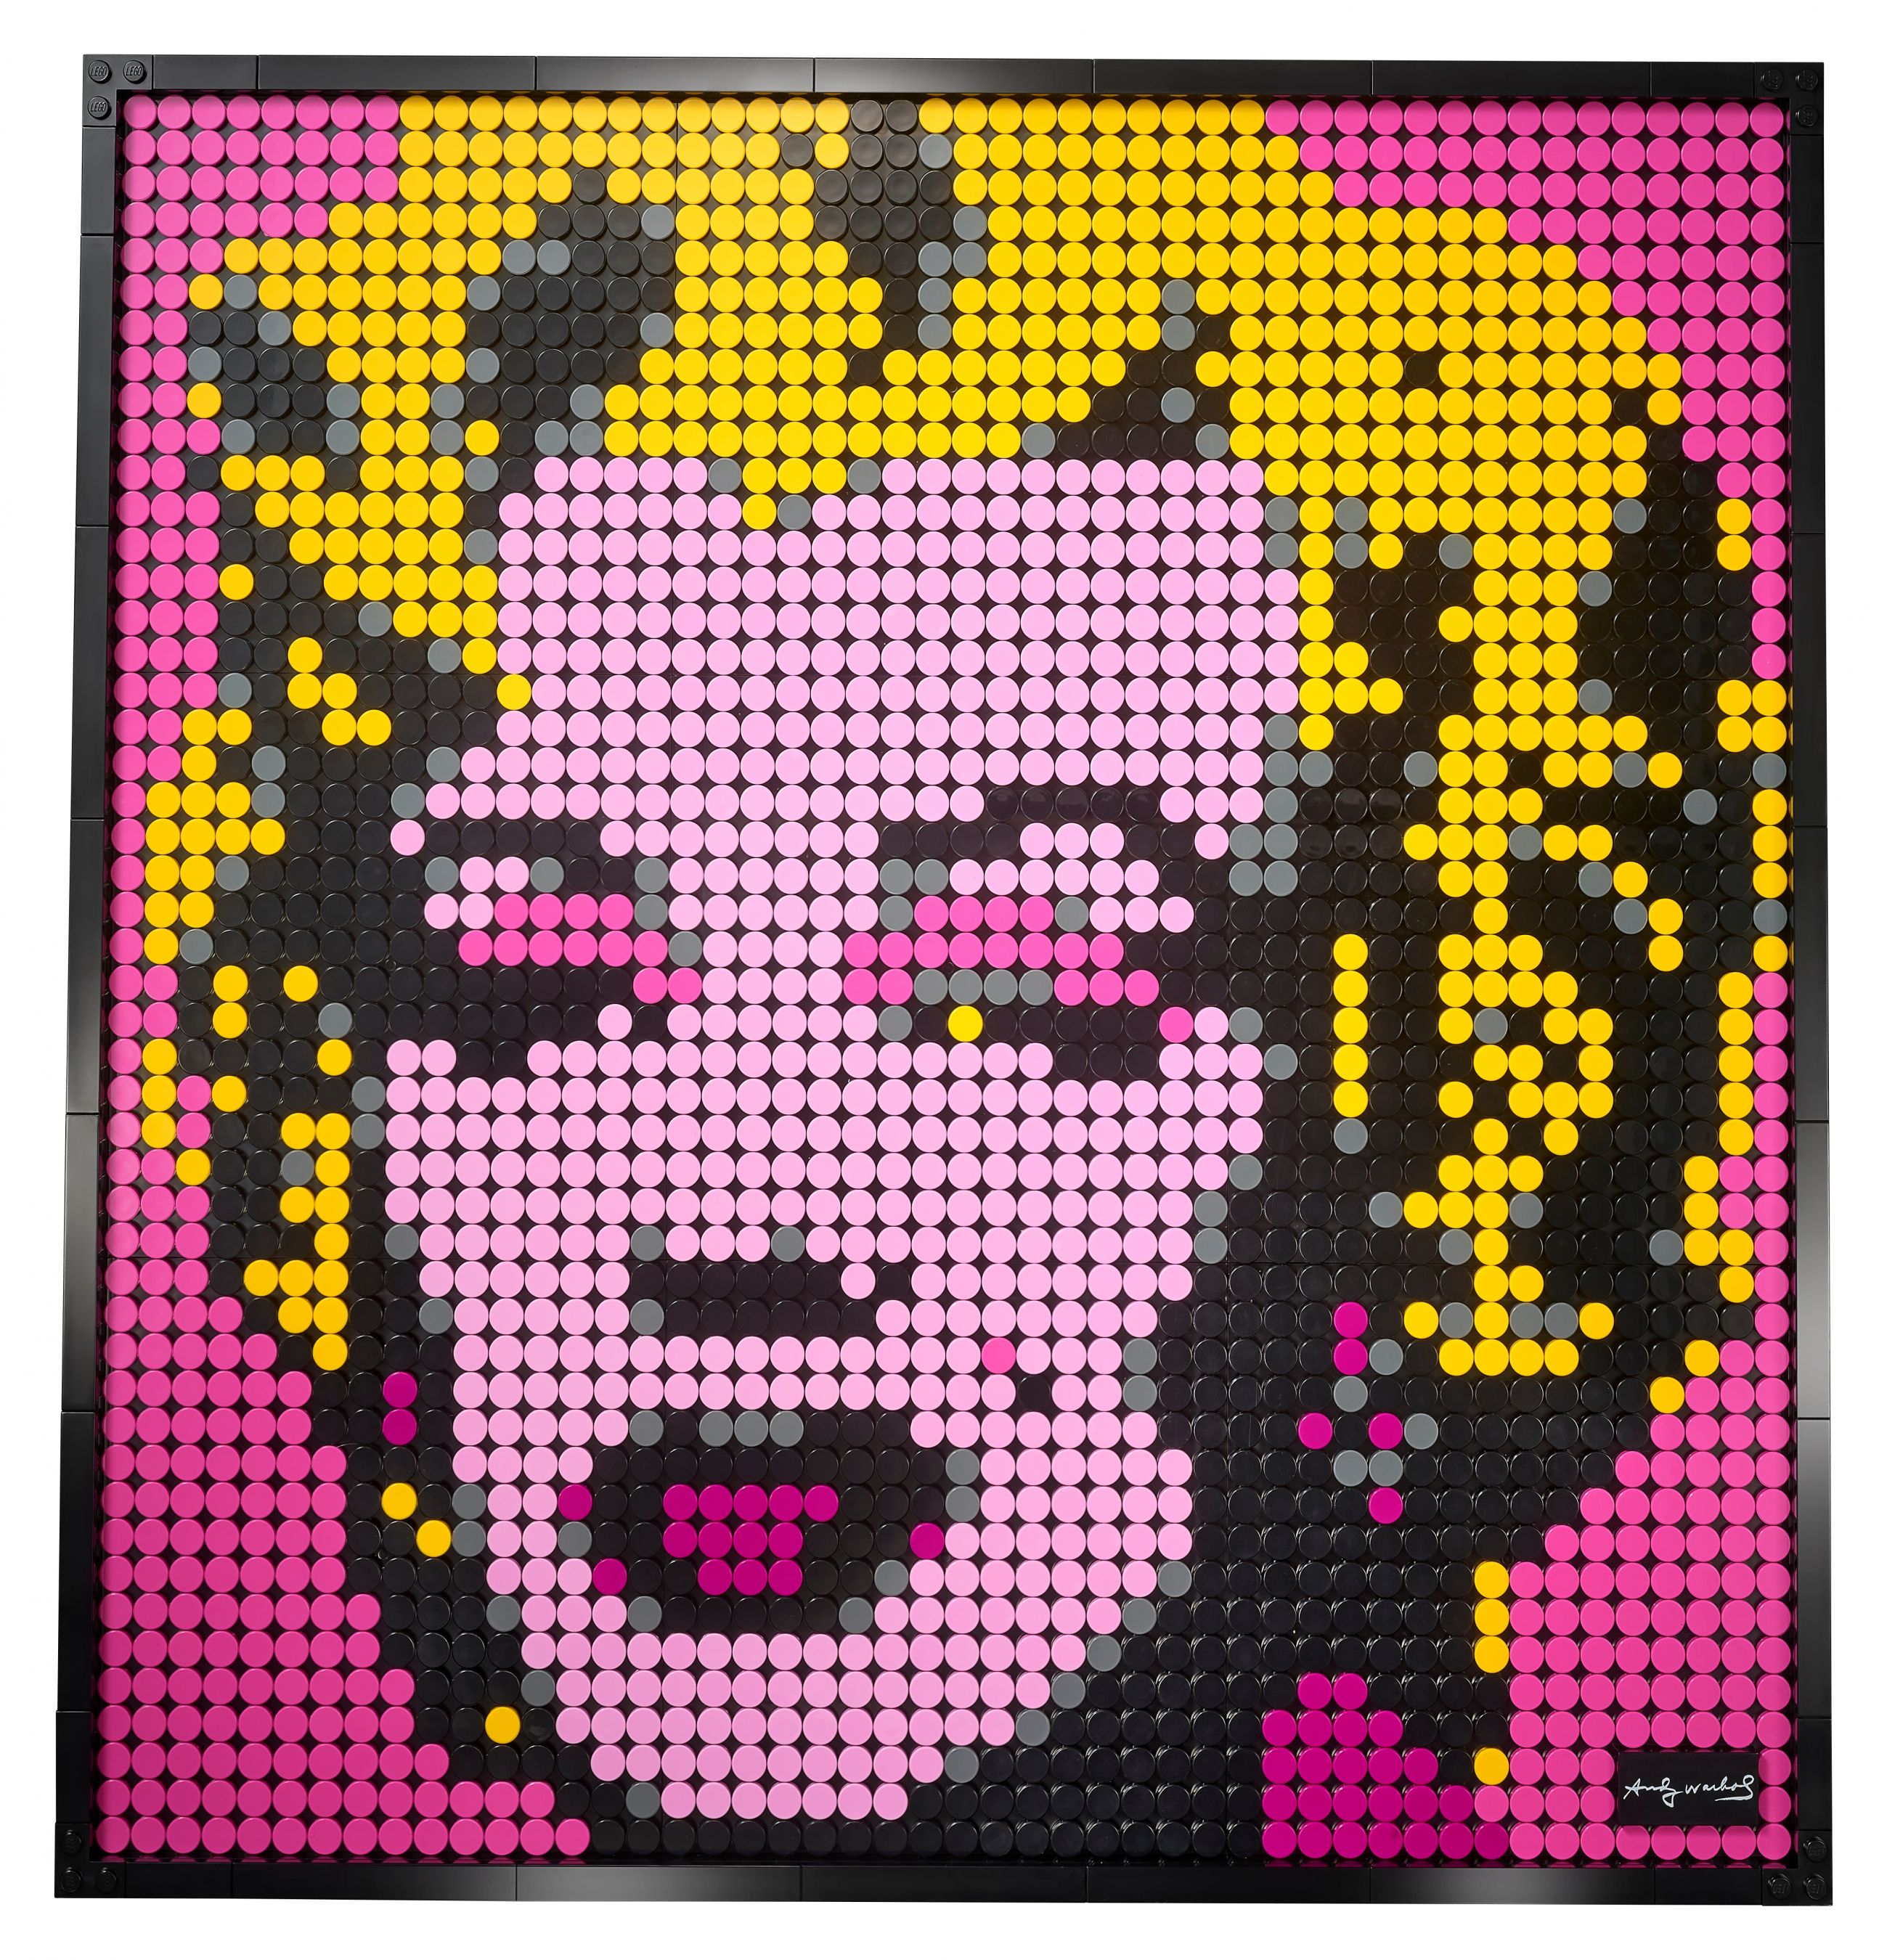 LEGO Art 31197 Andy Warhol's Marilyn Monroe LEGO_31197_alt2.jpg